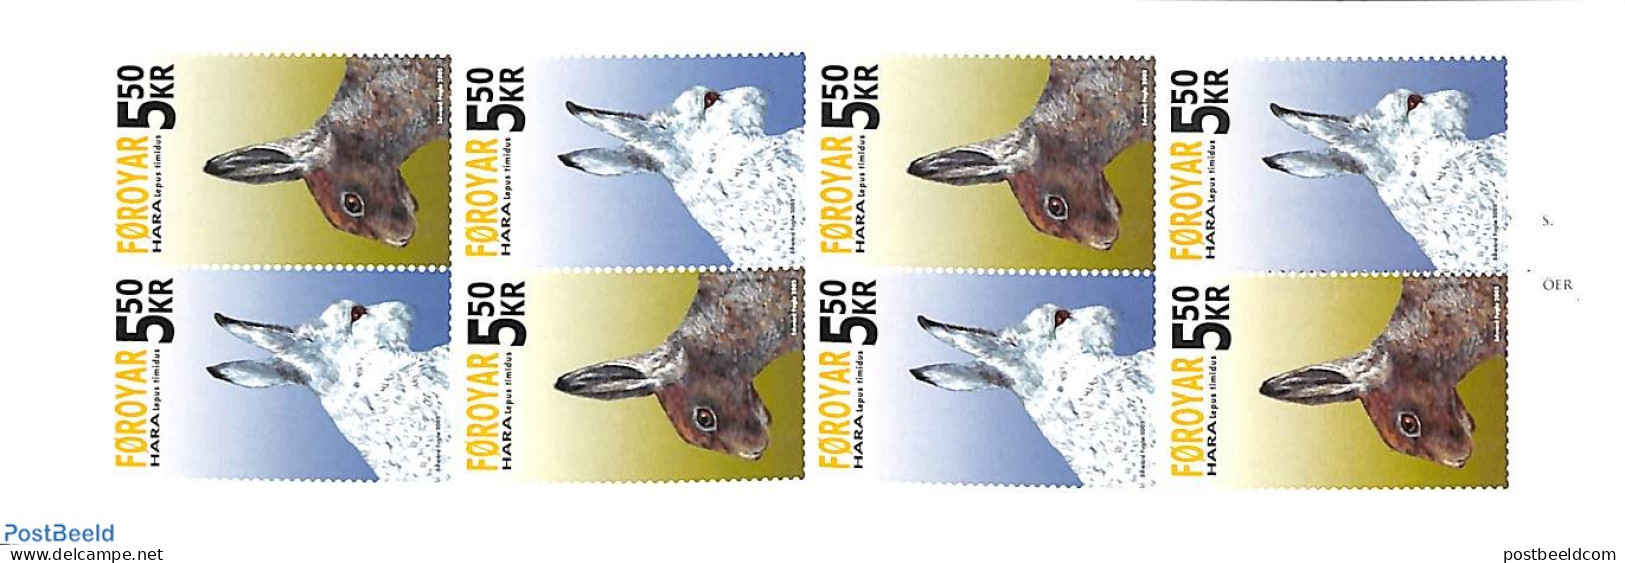 Faroe Islands 2005 Rabbits Booklet, Mint NH, Nature - Rabbits / Hares - Stamp Booklets - Non Classés